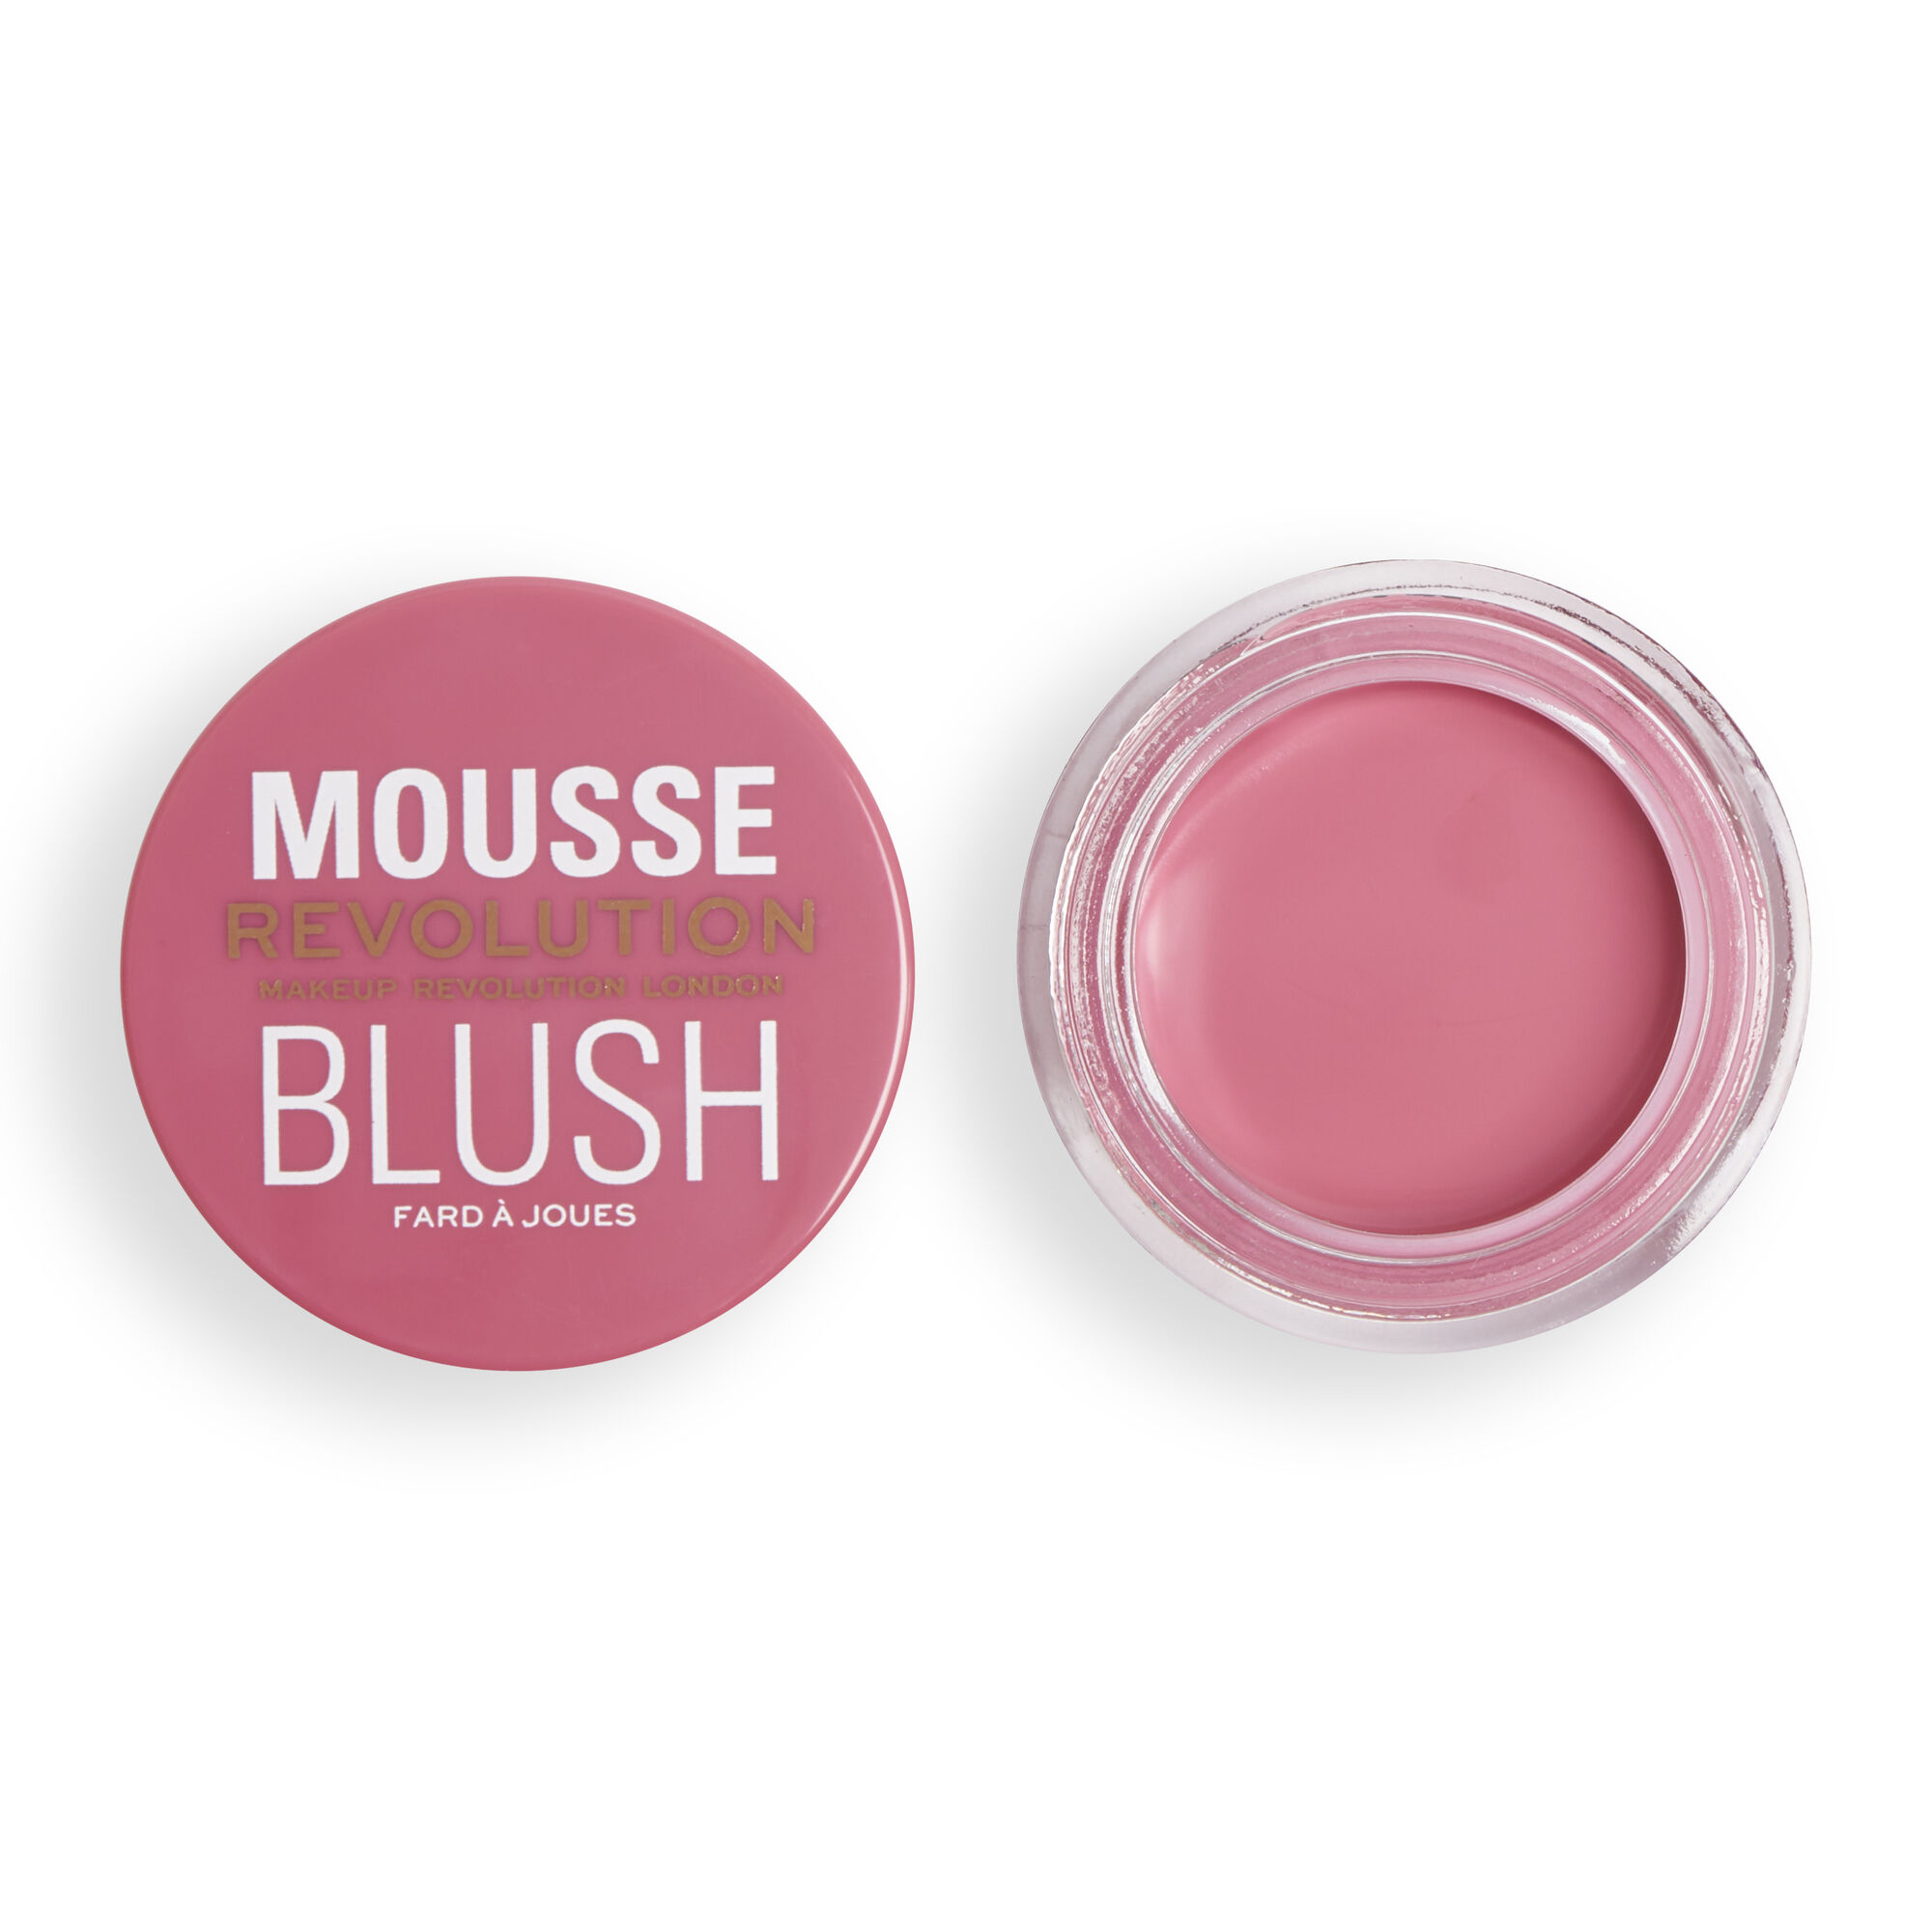 Румяна кремовые Revolution Makeup Mousse Blush Blossom Rose Pink румяна с зеркалом purepressed blush 13042 clearly pink ярко розовый 3 2 г